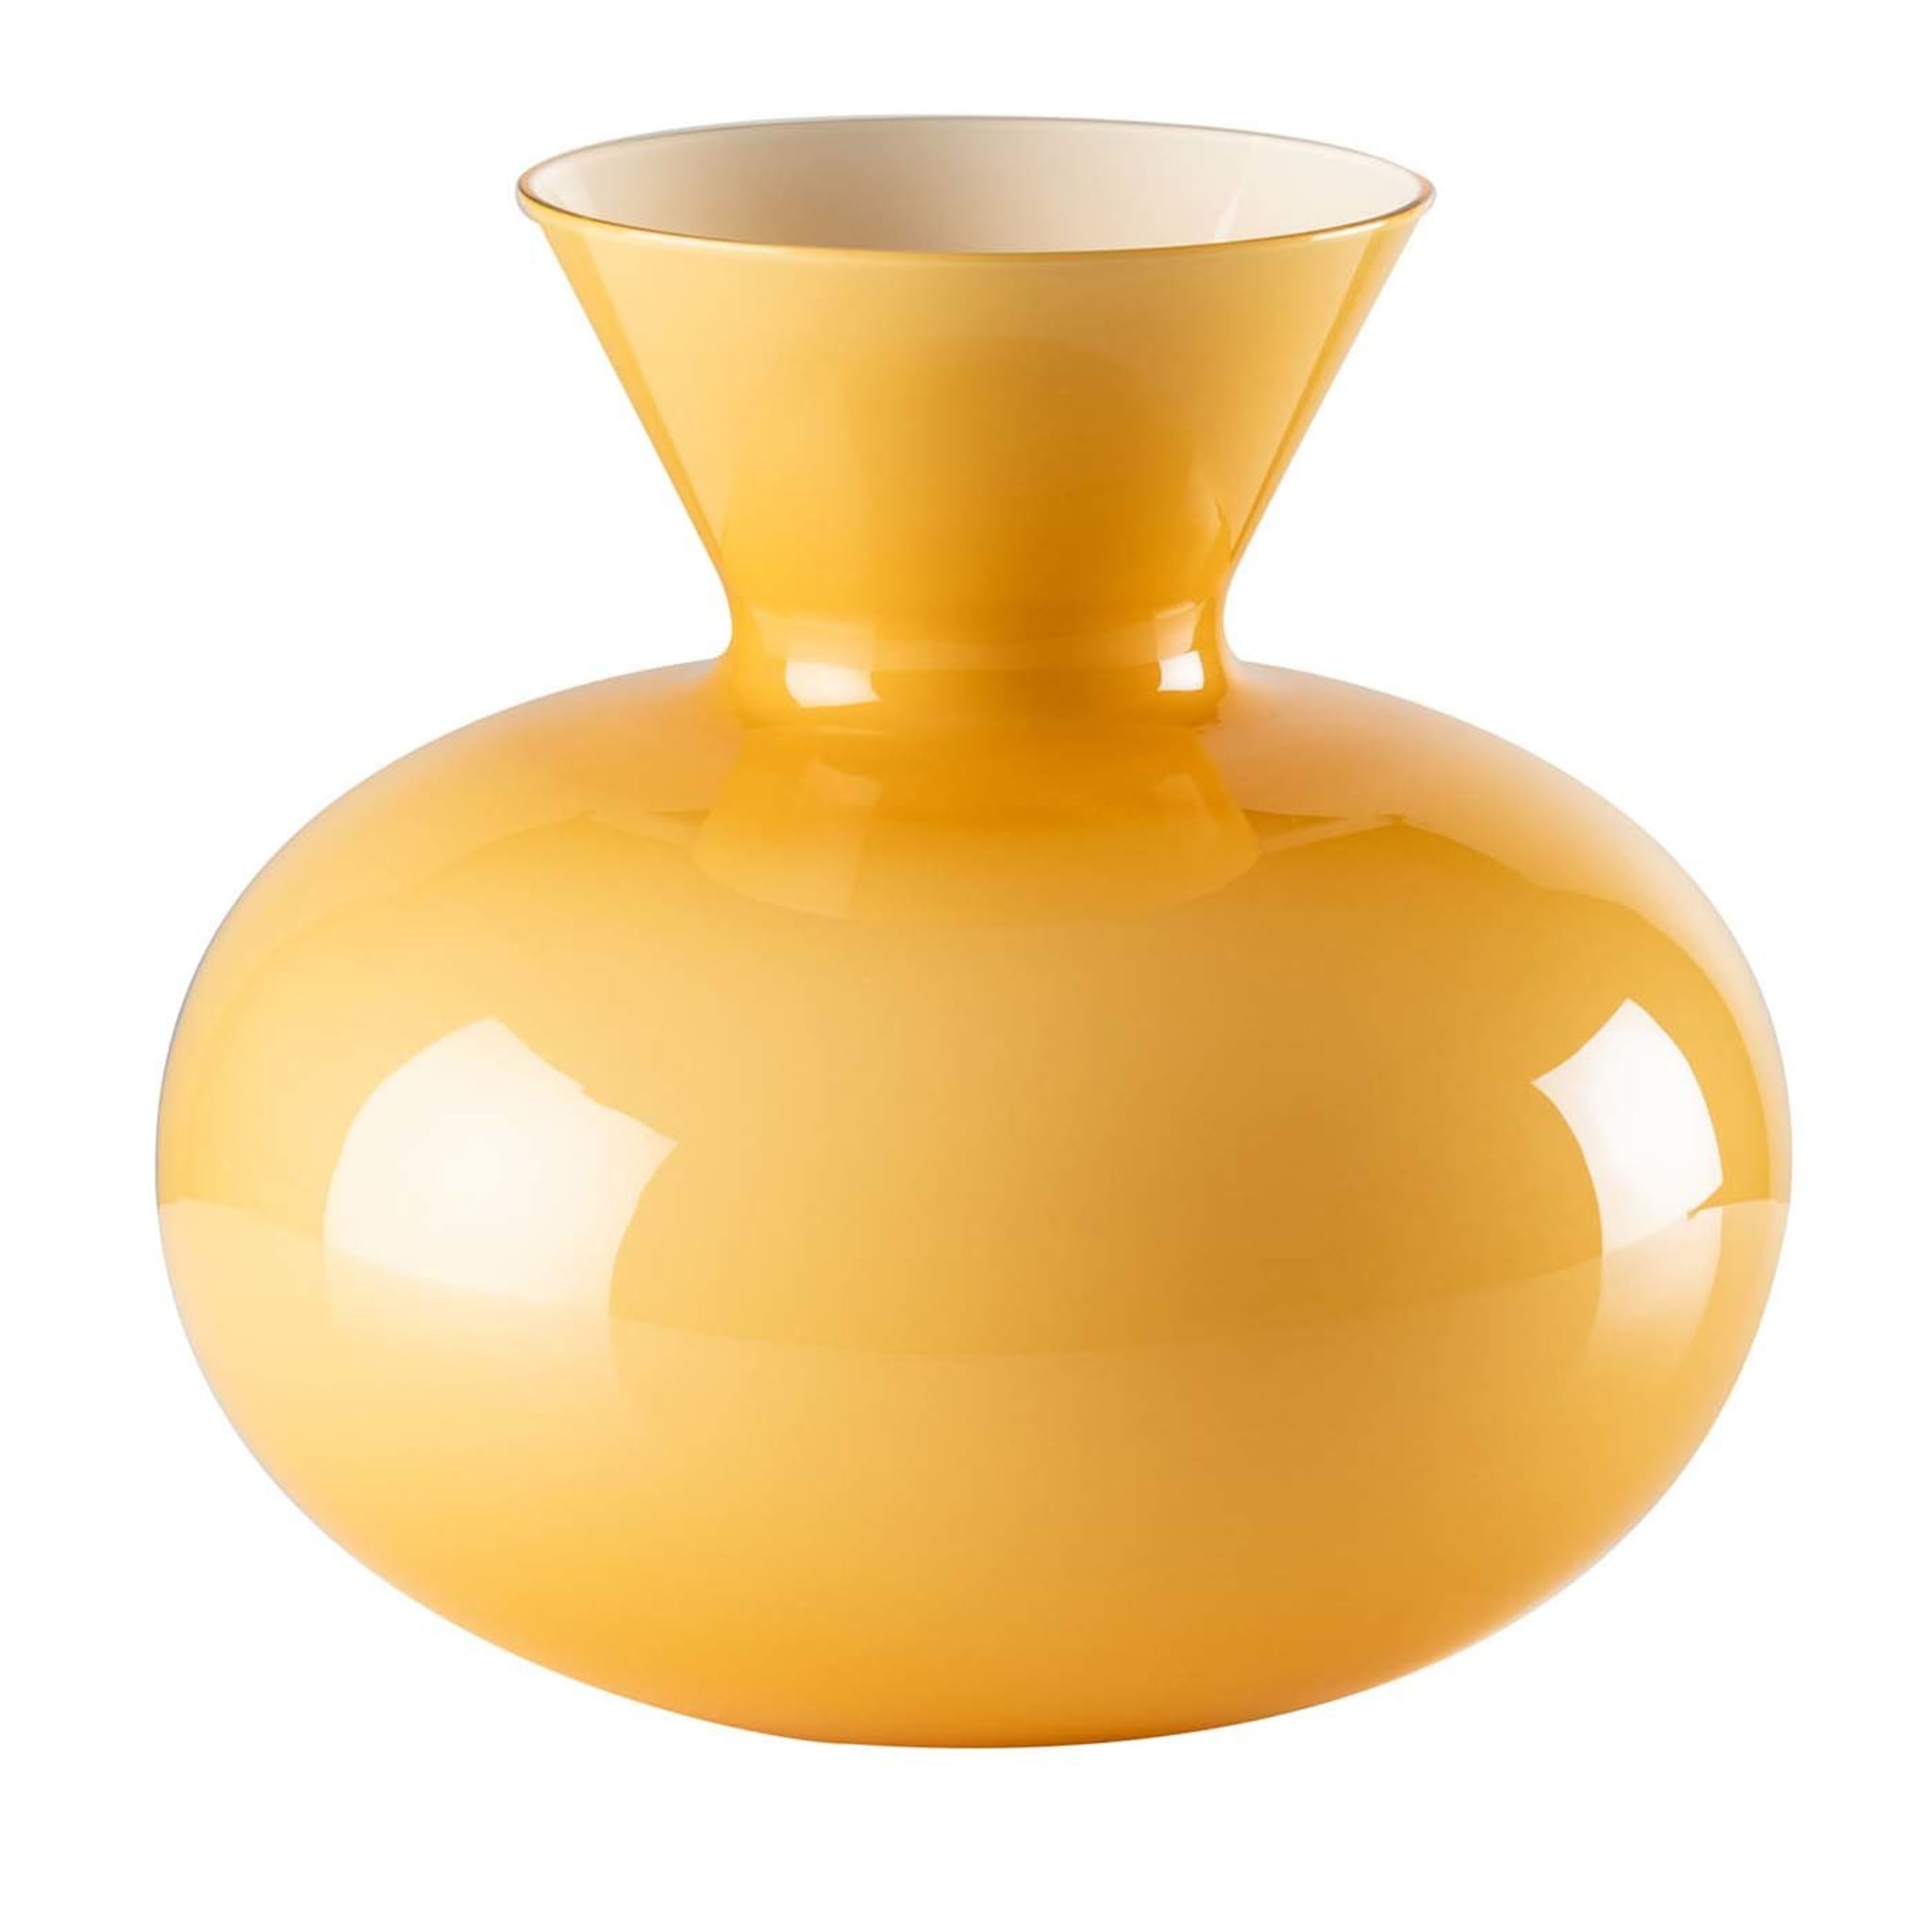 Idria Yellow Vase - Main view